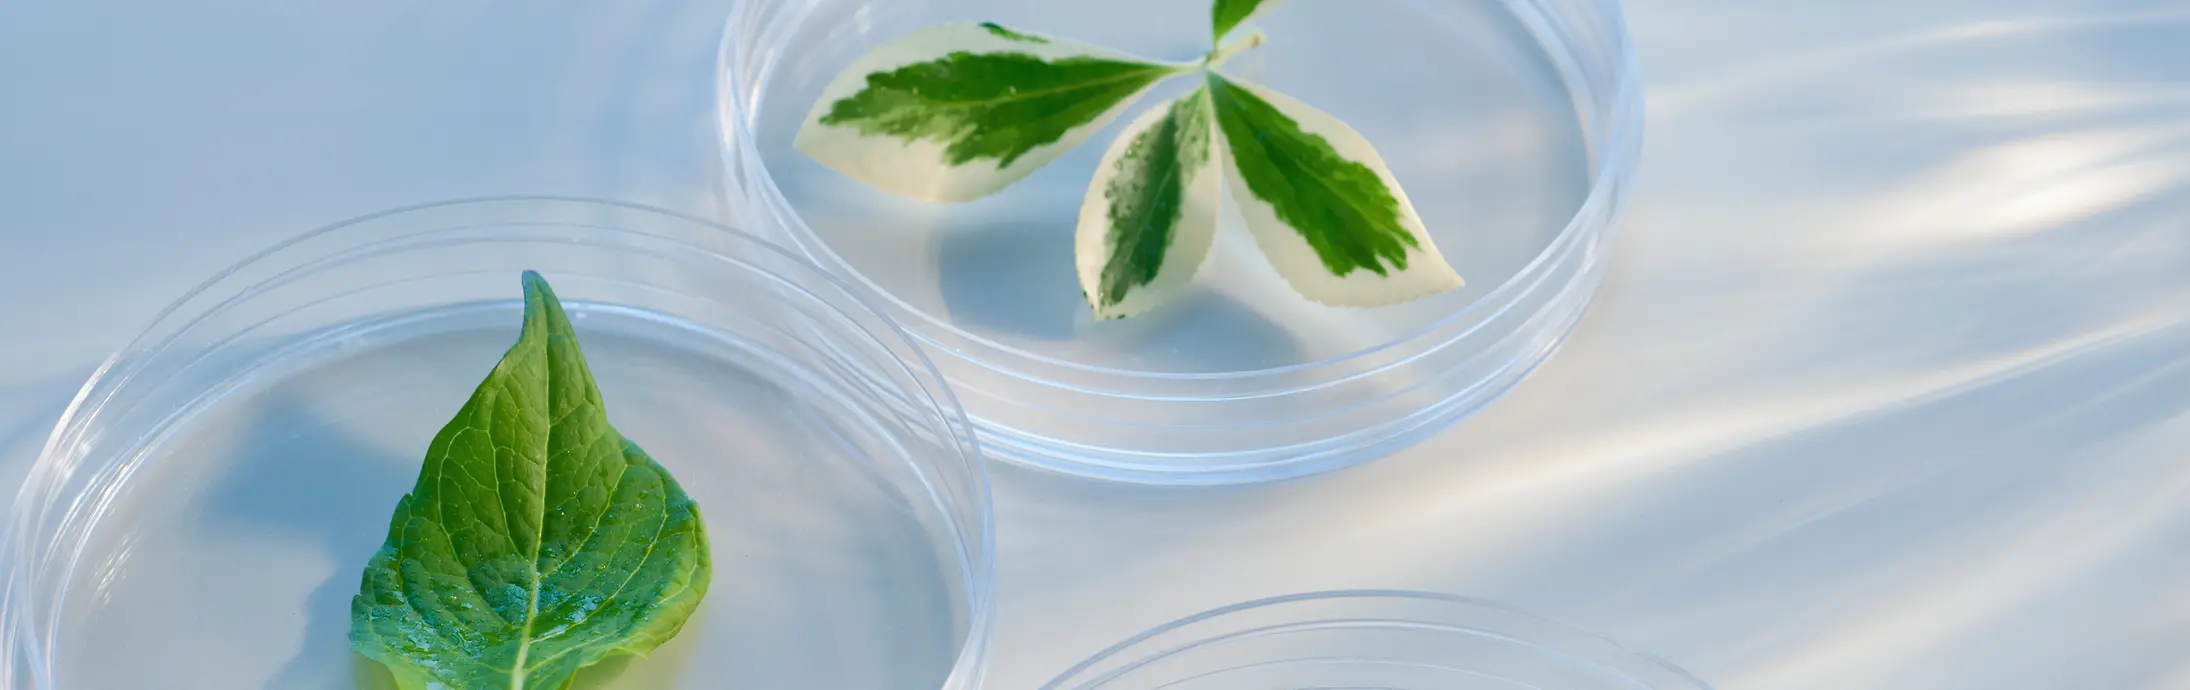 Хімічний експериментальний посуд із зеленим листям